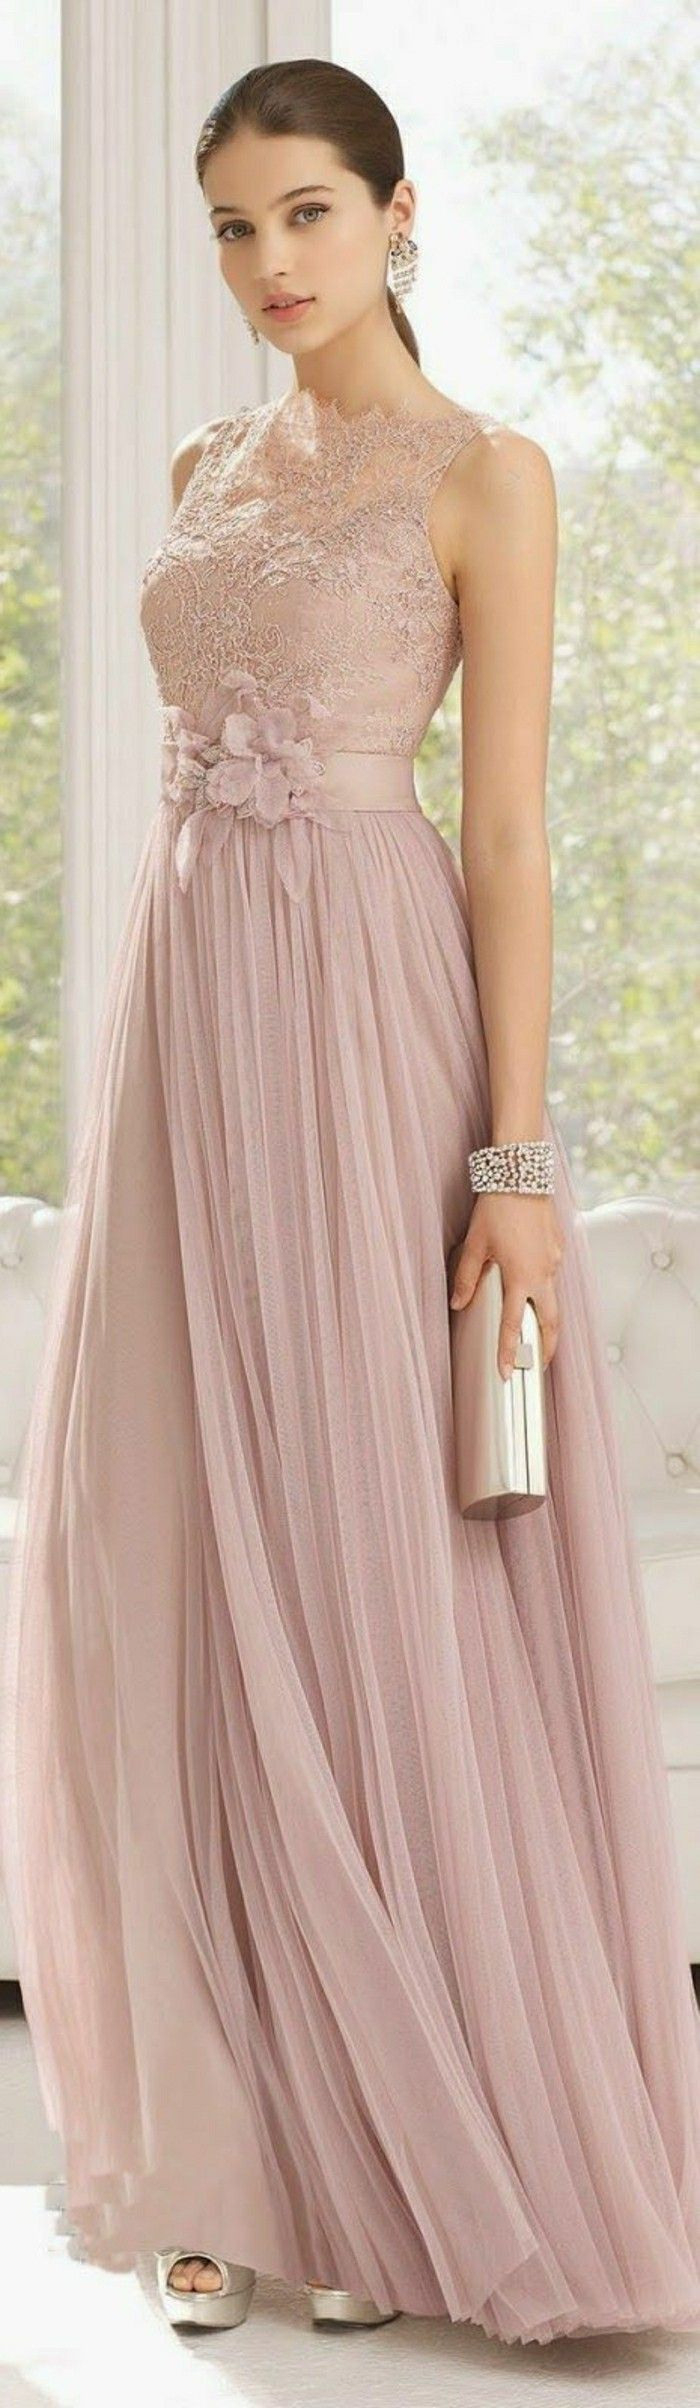 Rosa Brautkleid Für Einen Glamourösen Hochzeits-Look